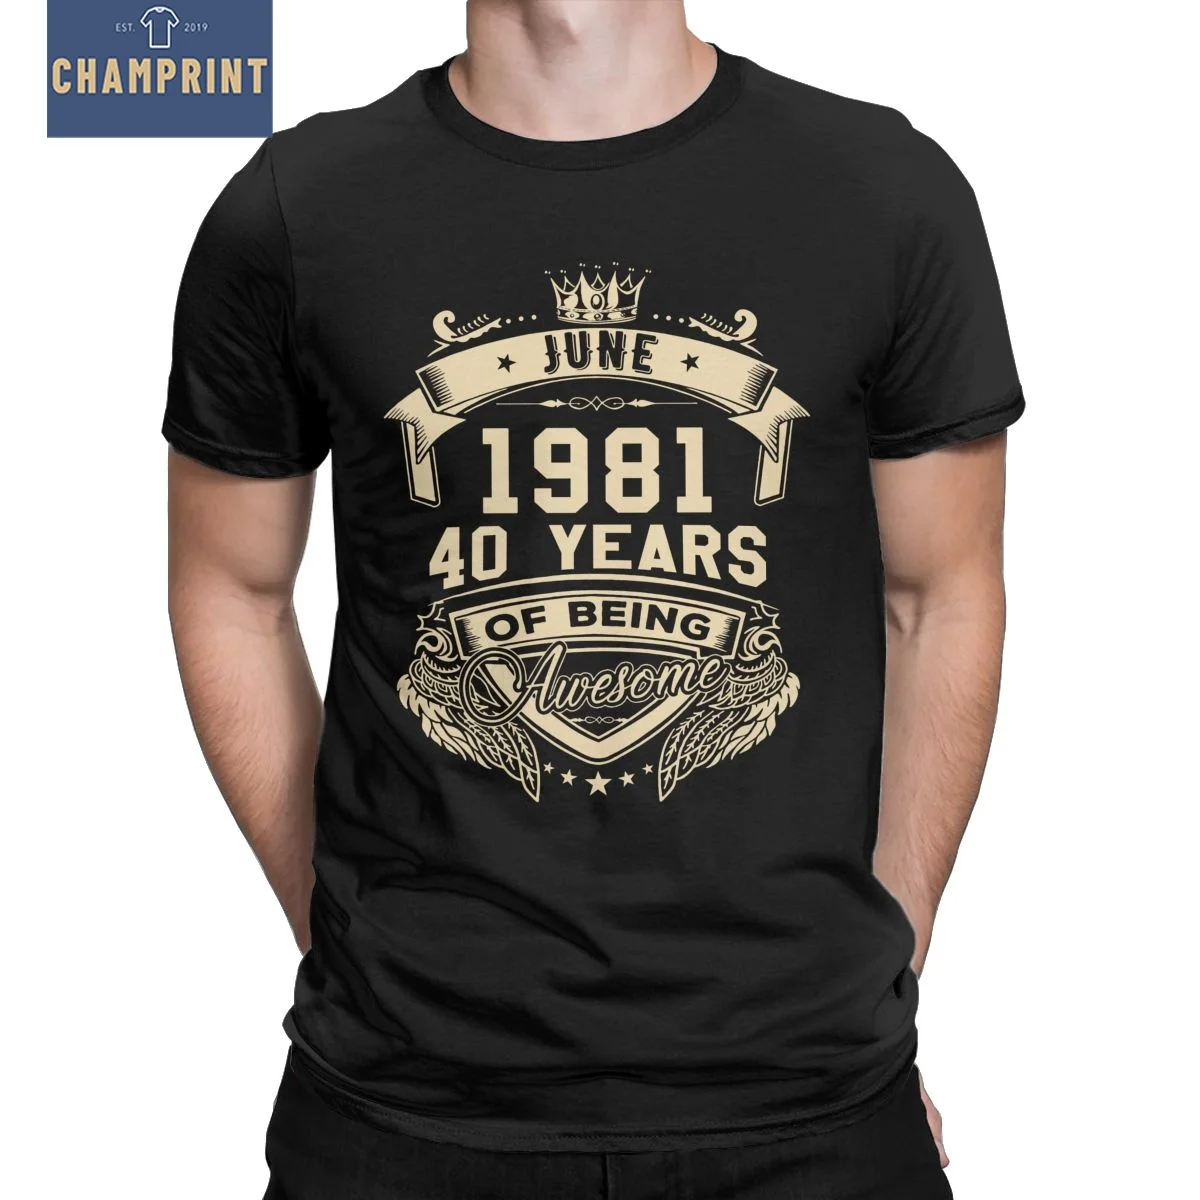 

Футболка мужская из 1981 хлопка, рожденная в июне 100%, 40 лет быть удивительной, лимитированная, футболка на 40-й день рождения, летняя одежда